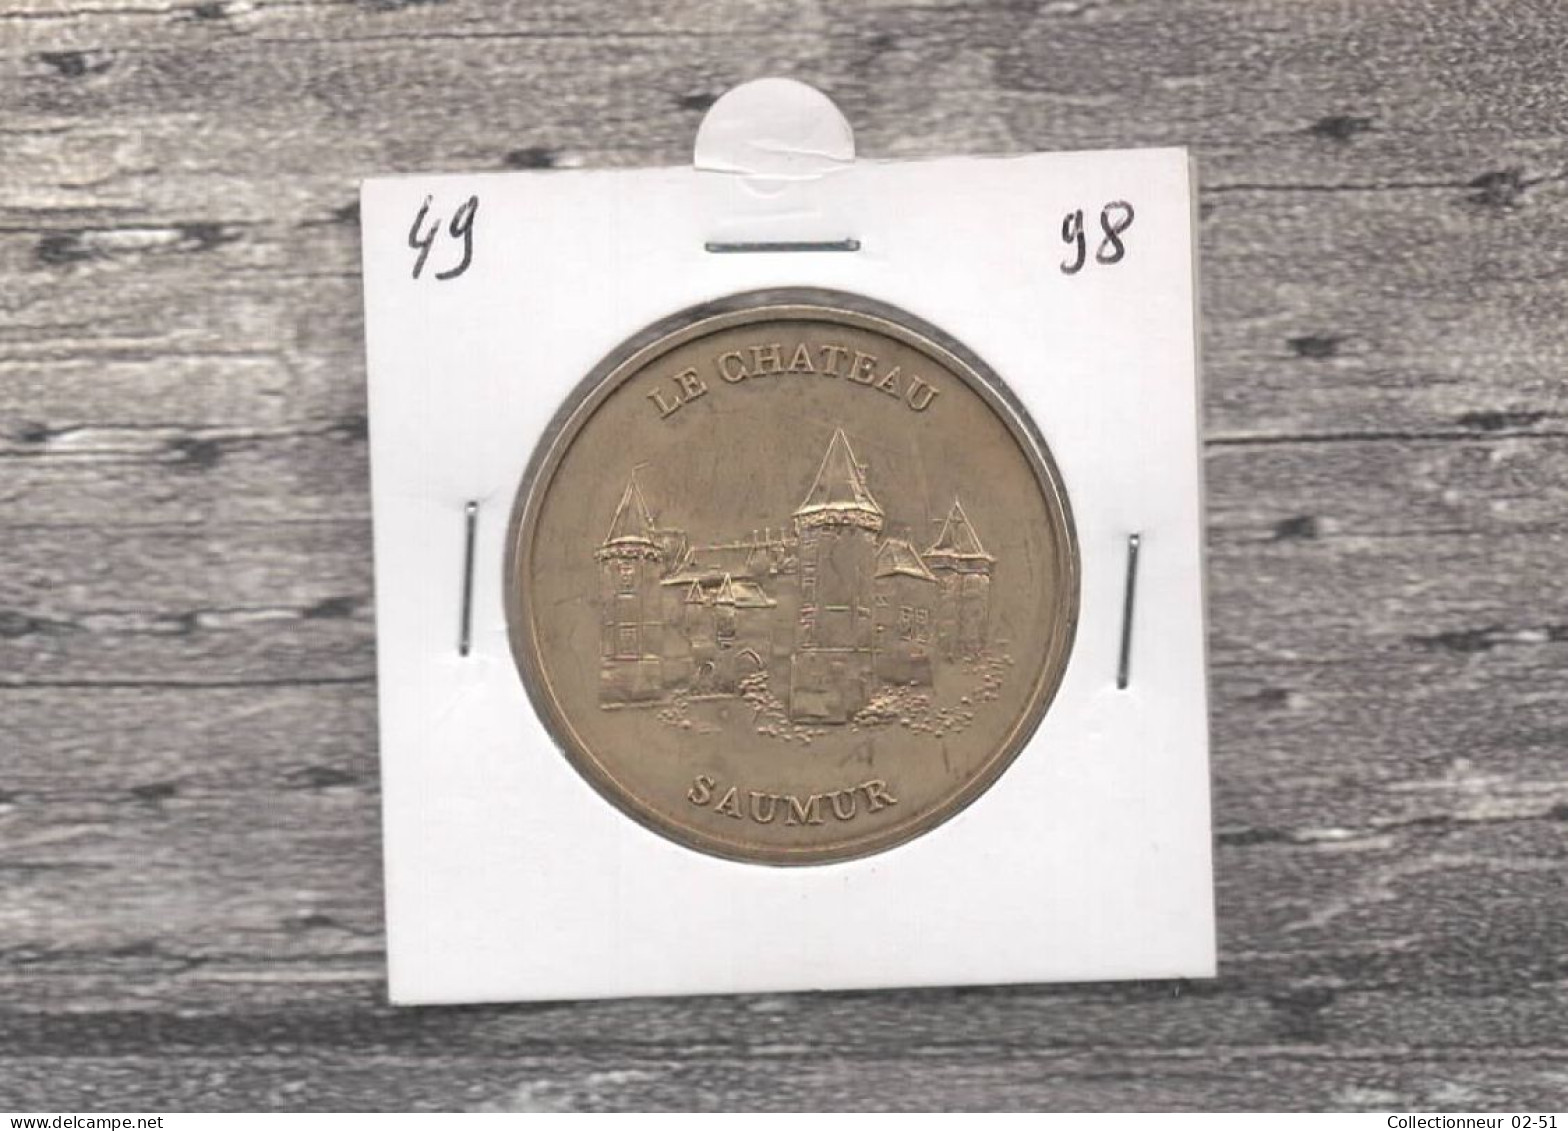 Monnaie De Paris : Le Château Saumur - 1998 - Zonder Datum